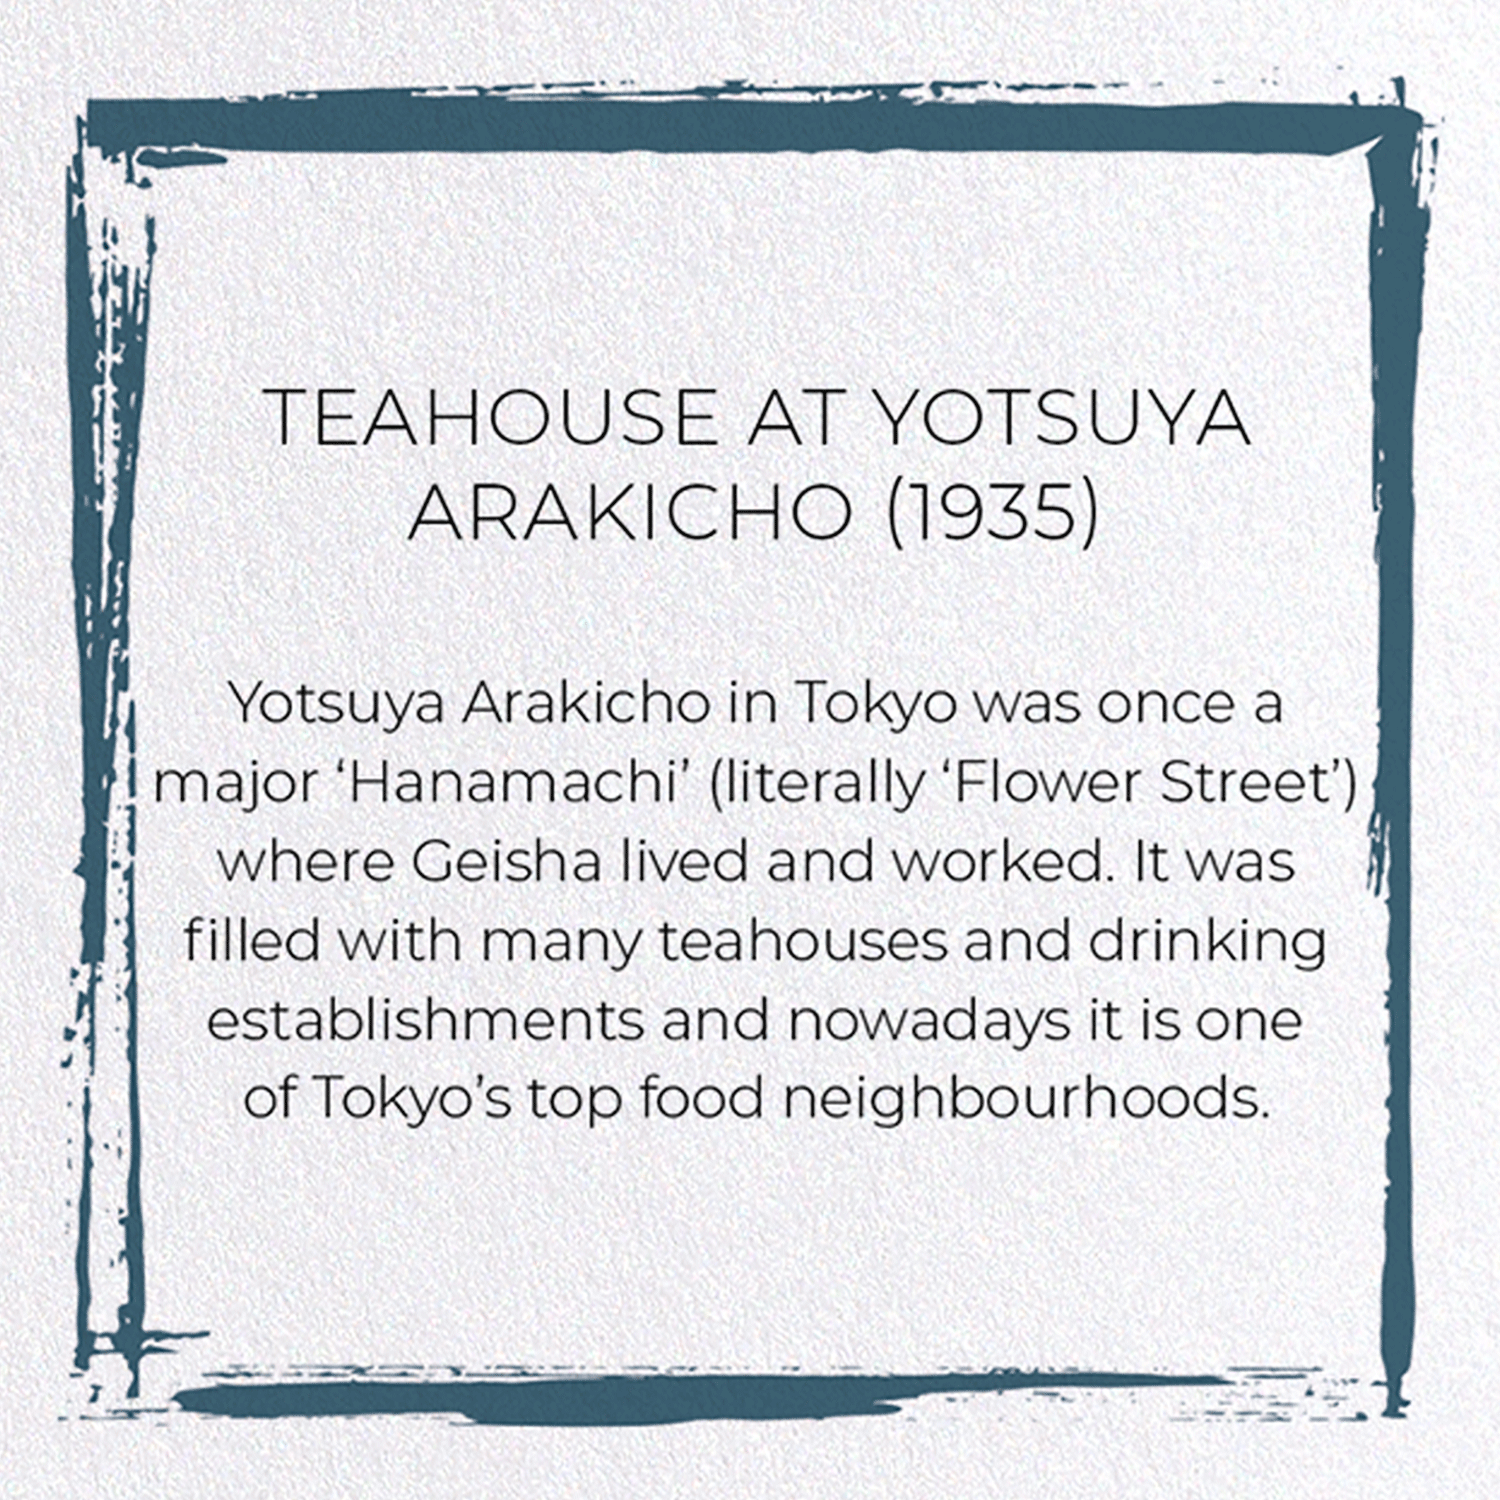 TEAHOUSE AT YOTSUYA ARAKICHO (1935)